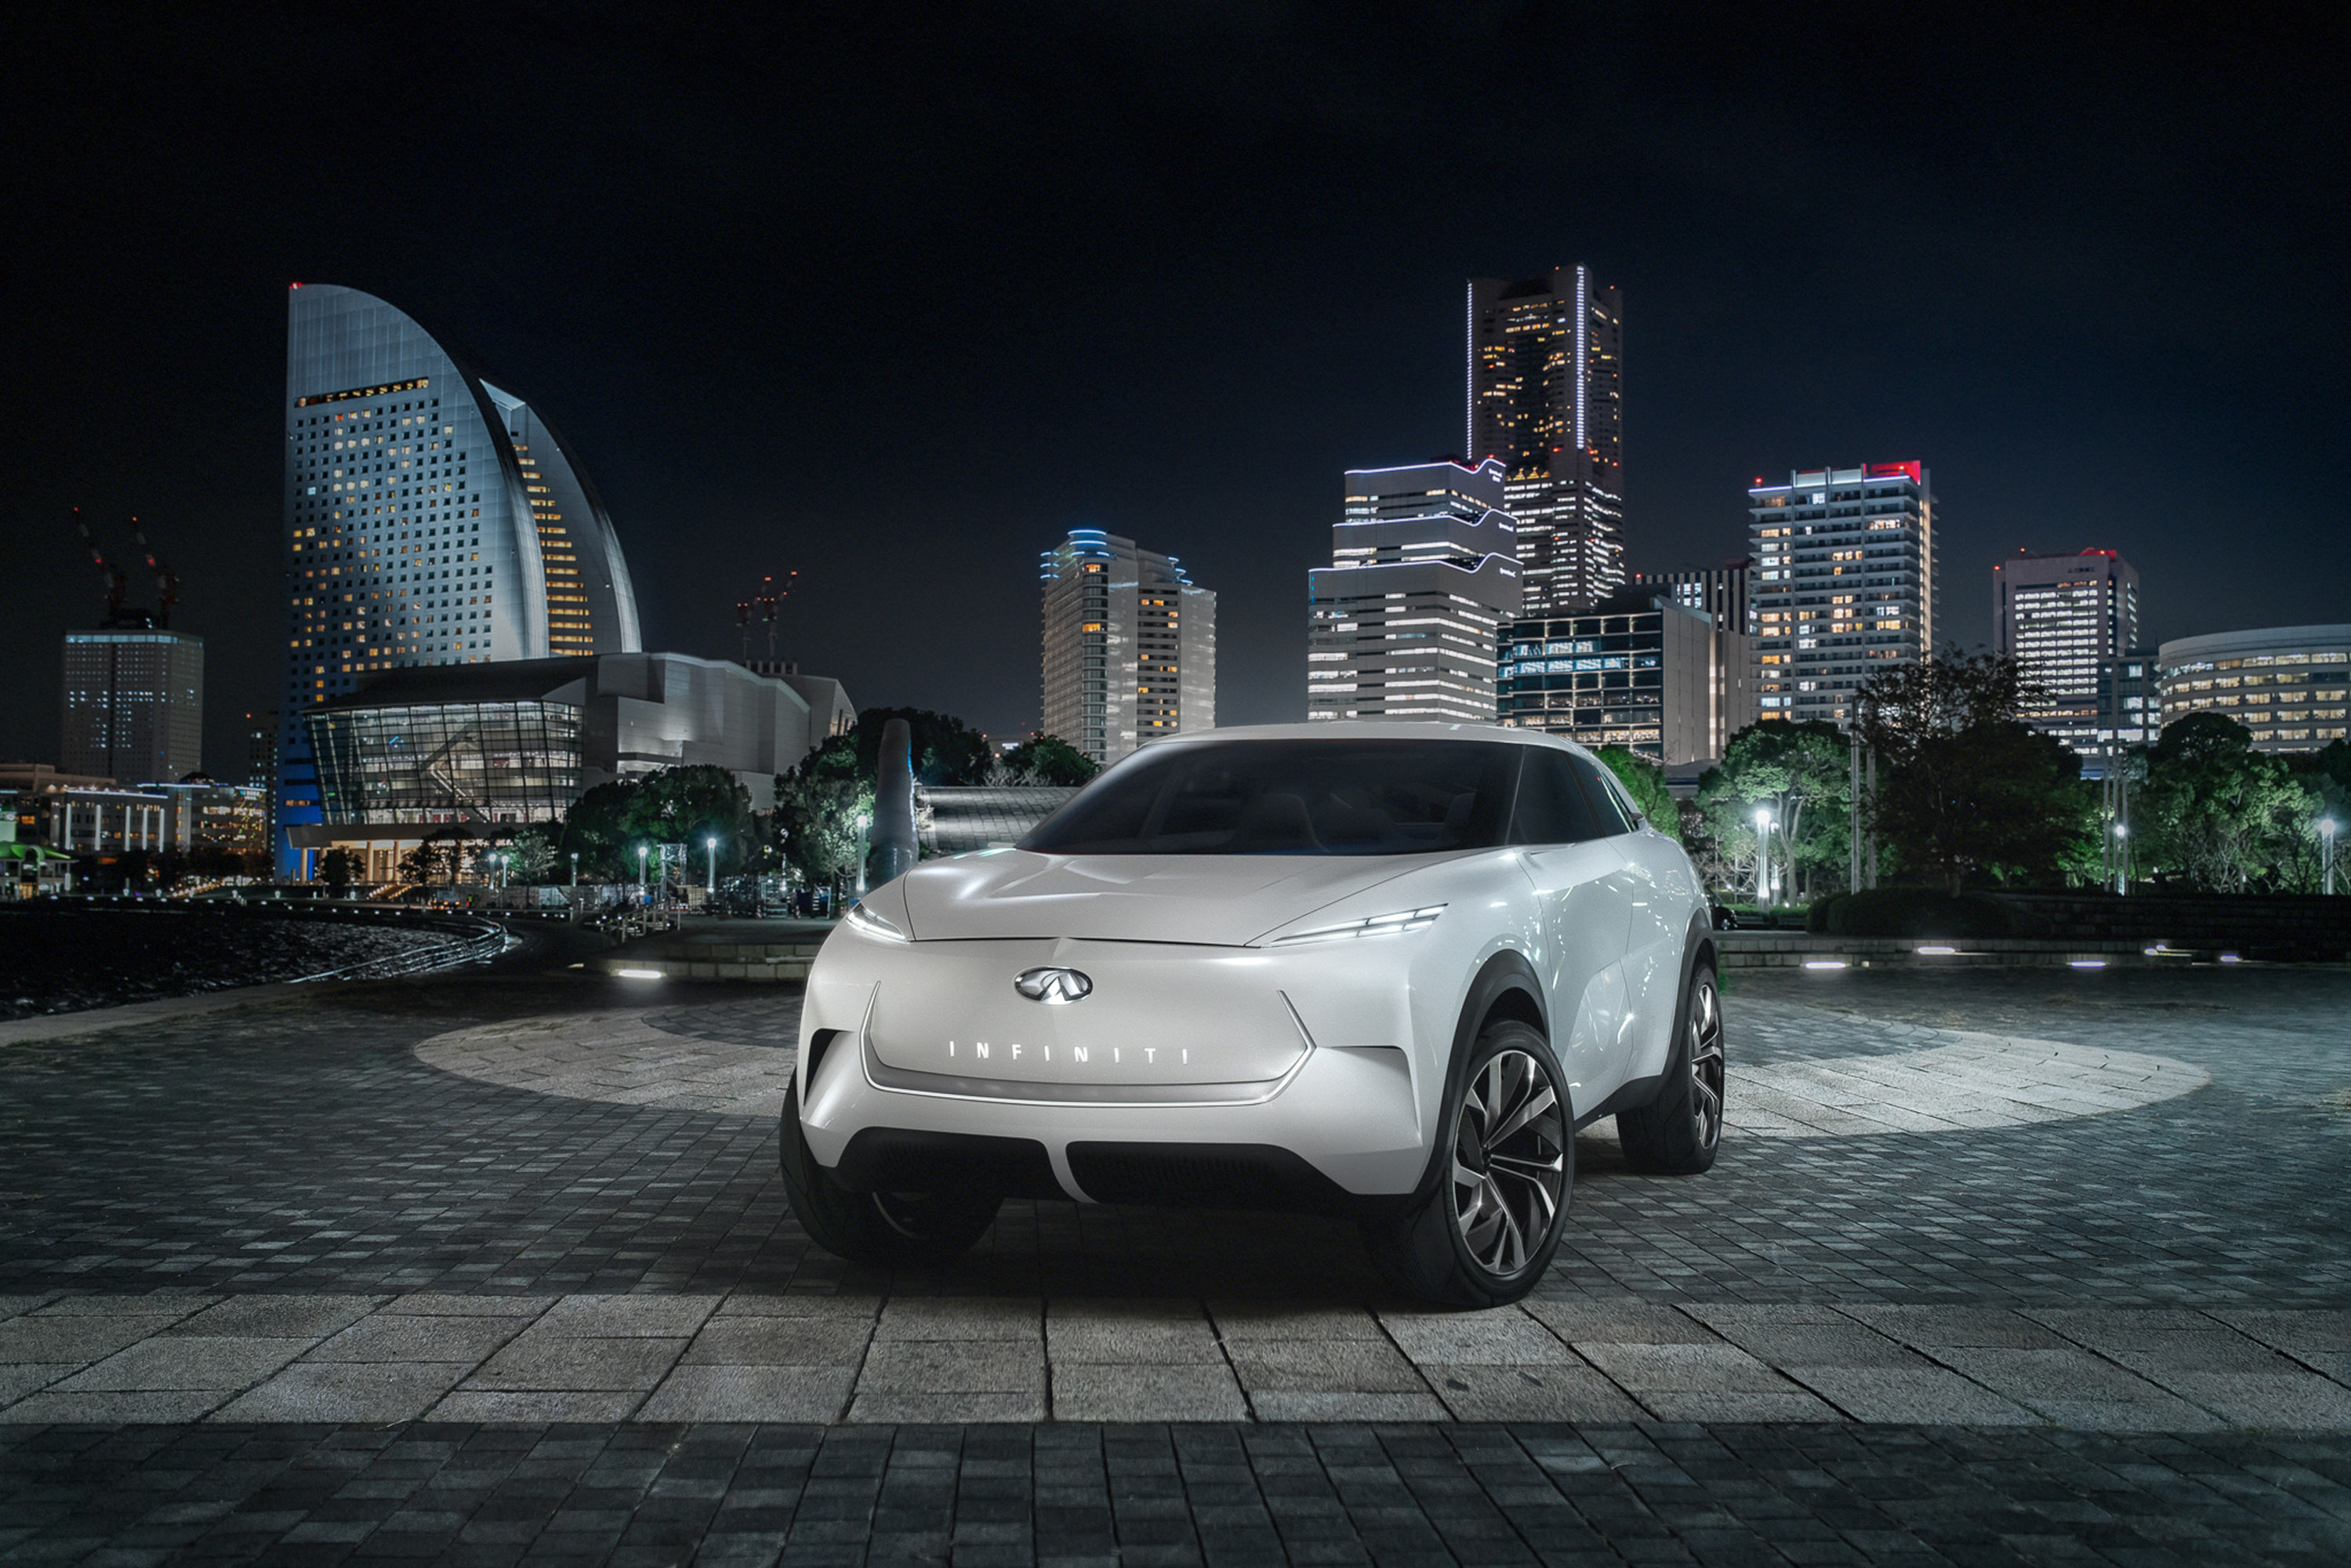 Команда INFINITI готова представить свой новый концептуальный электромобиль QX Inspiration на Североамериканском международном автосалоне 2019 в этом месяце.   Бренд покажет высокопроизводительную электрифицированную машину с широким спектром стандар